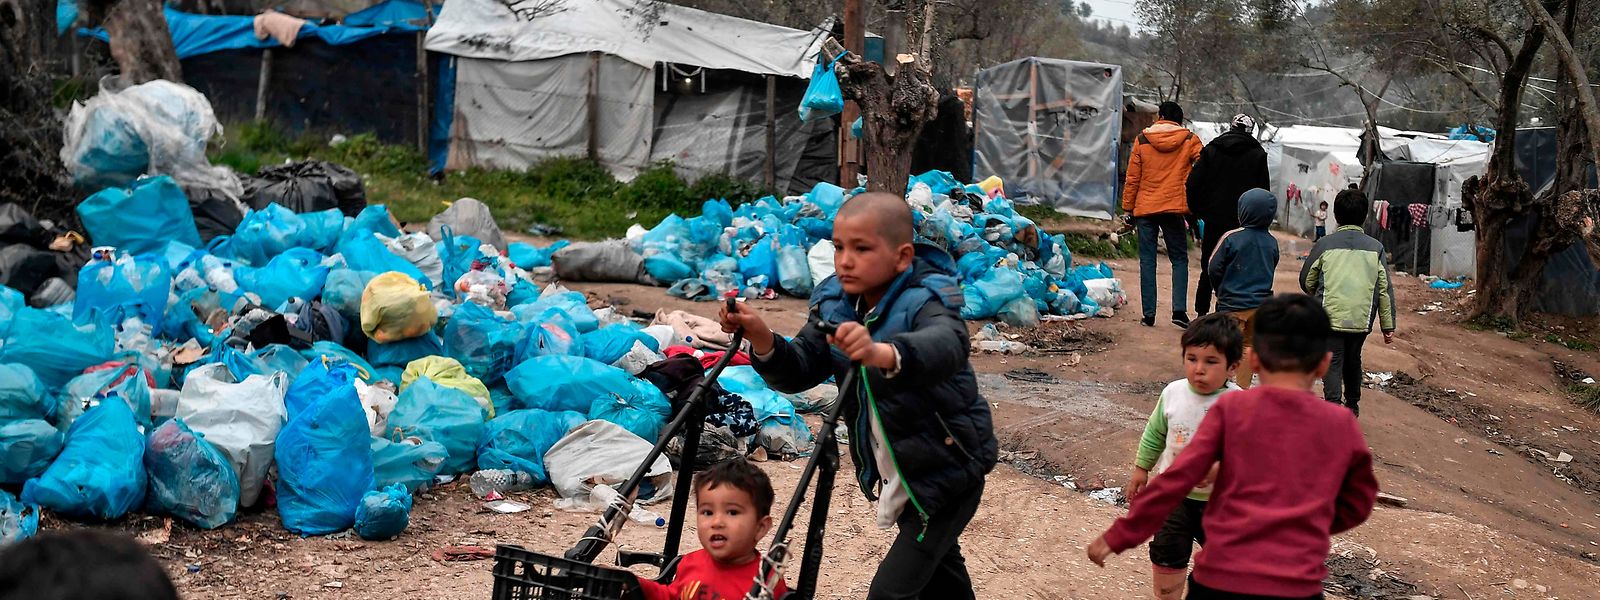 Das berüchtigte Flüchtlingslager Moria auf der griechischen Insel Lesbos: Hier herrschen katastrophale hygiensiche Zustände.